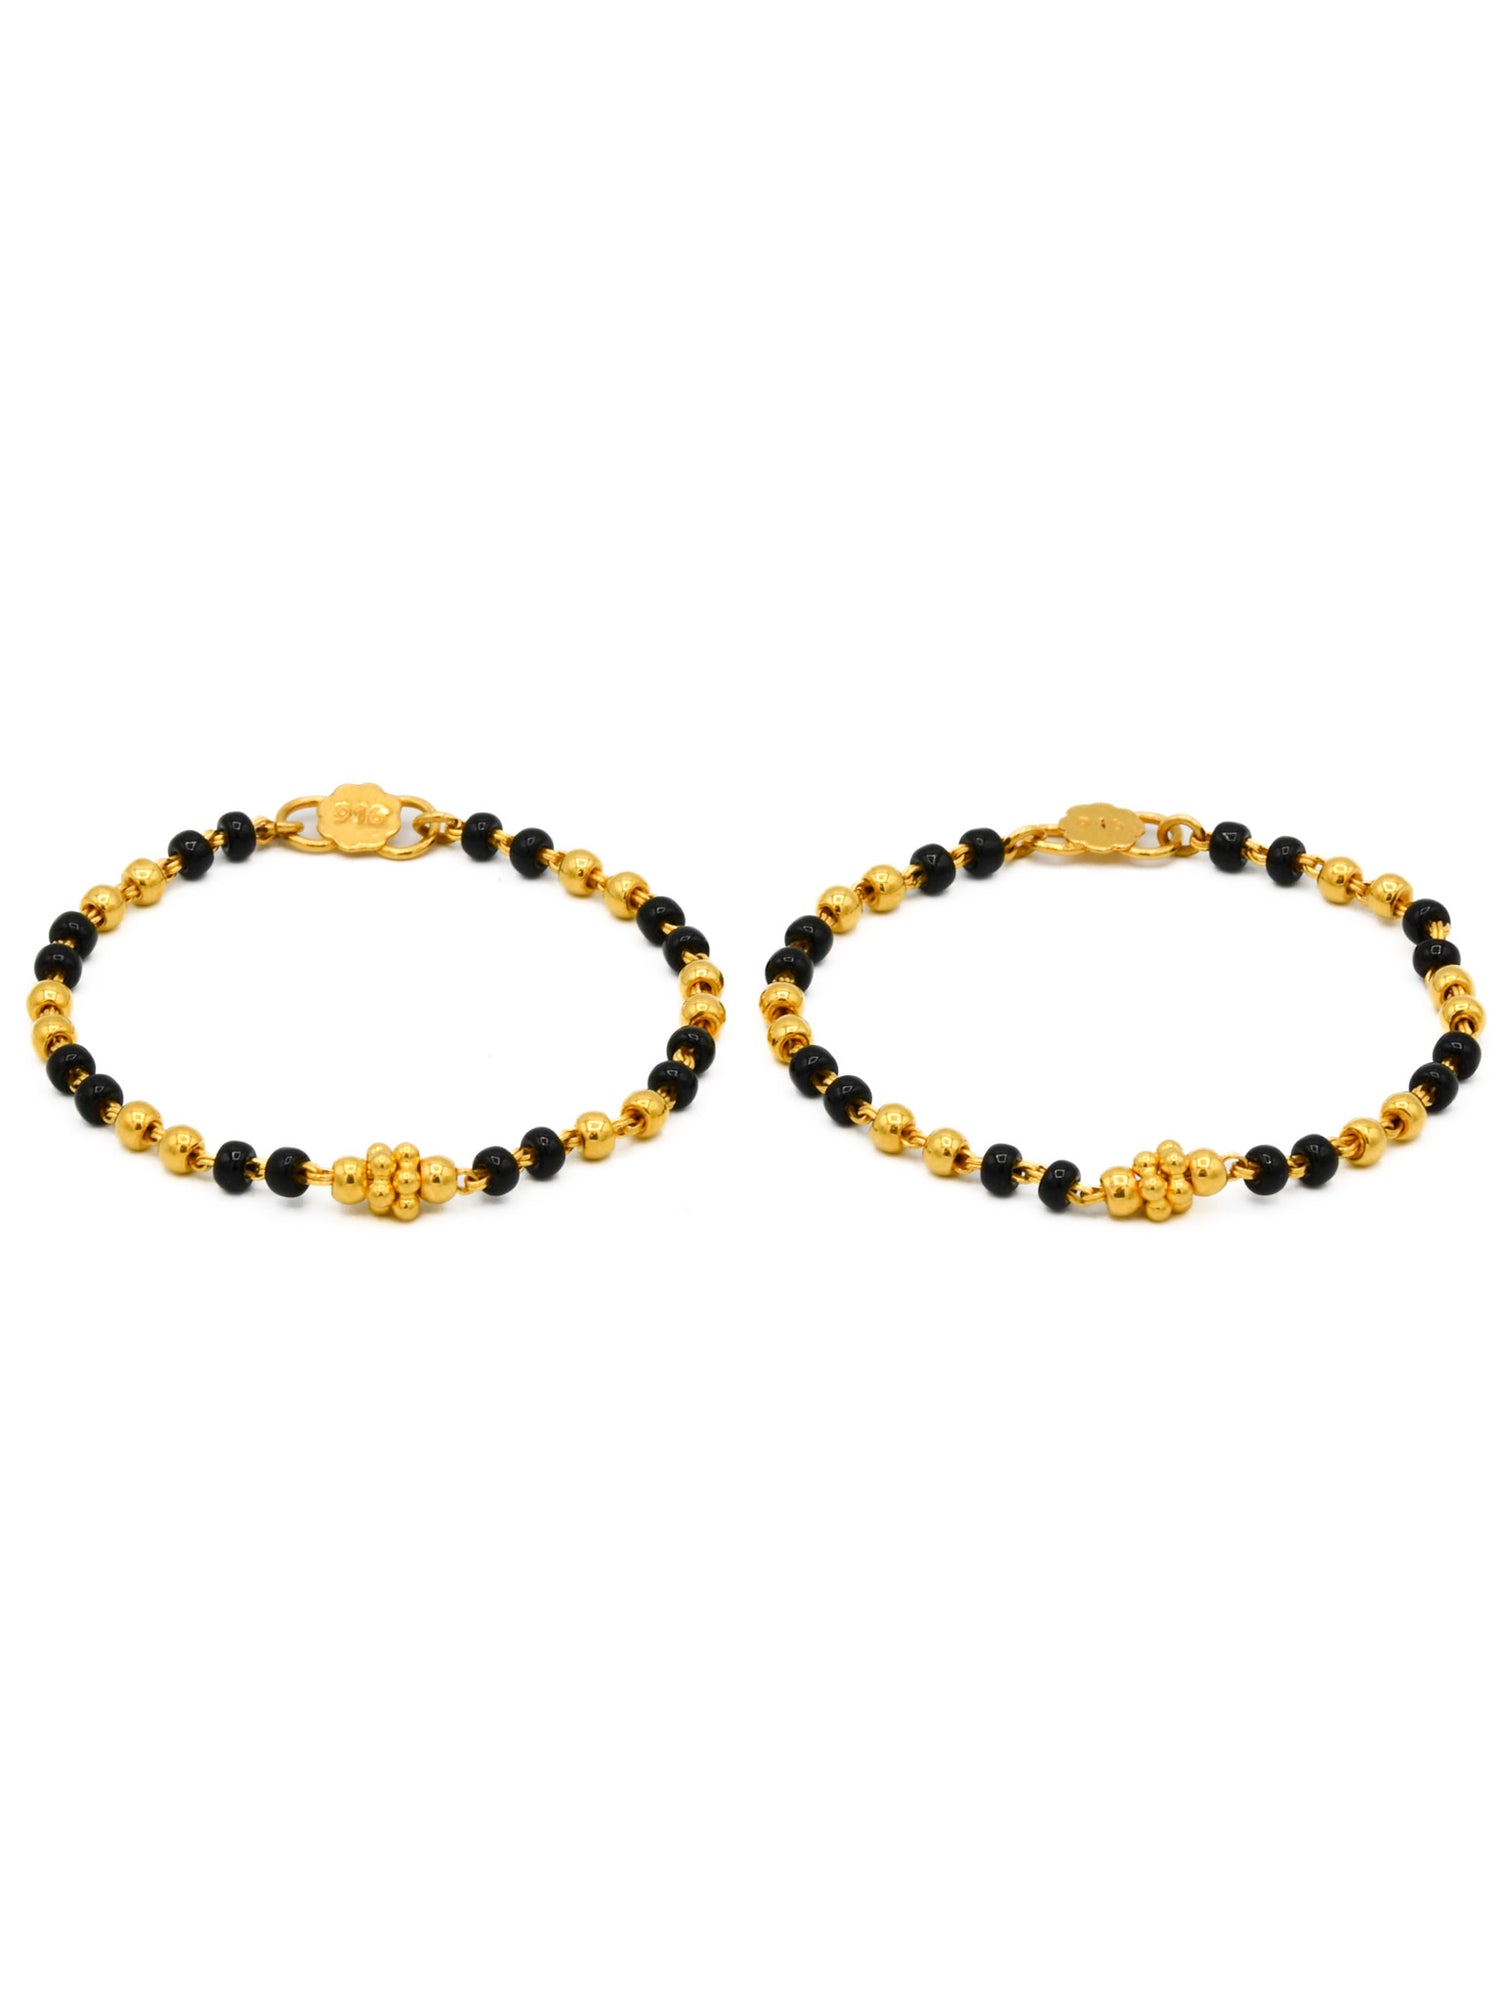 22ct Gold Black Beads Pair Baby Bracelet - Roop Darshan